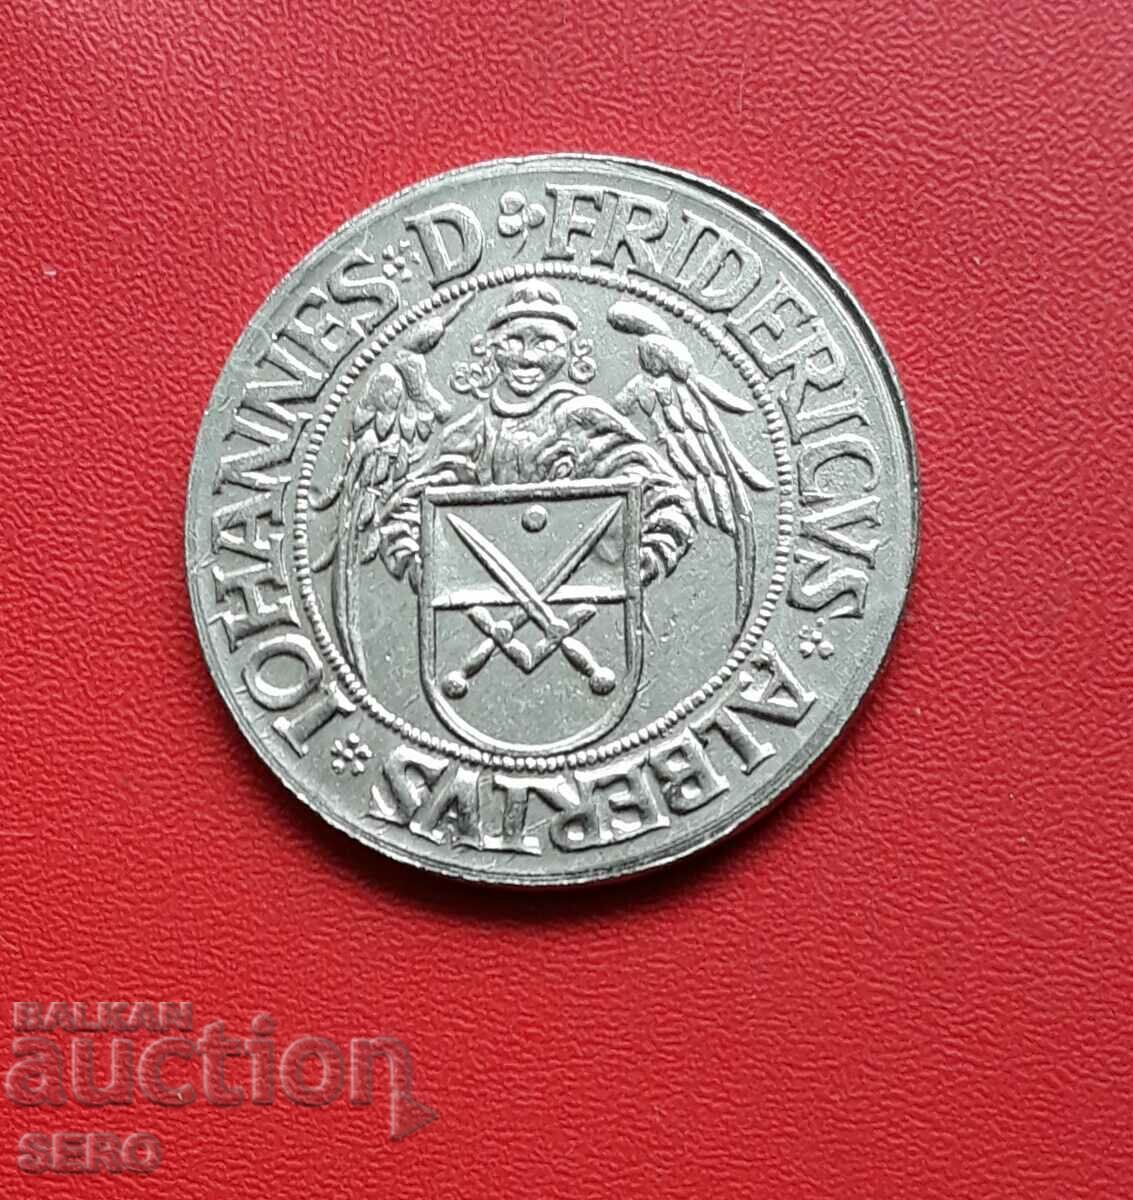 Czech Republic - copy of a medieval Czech coin